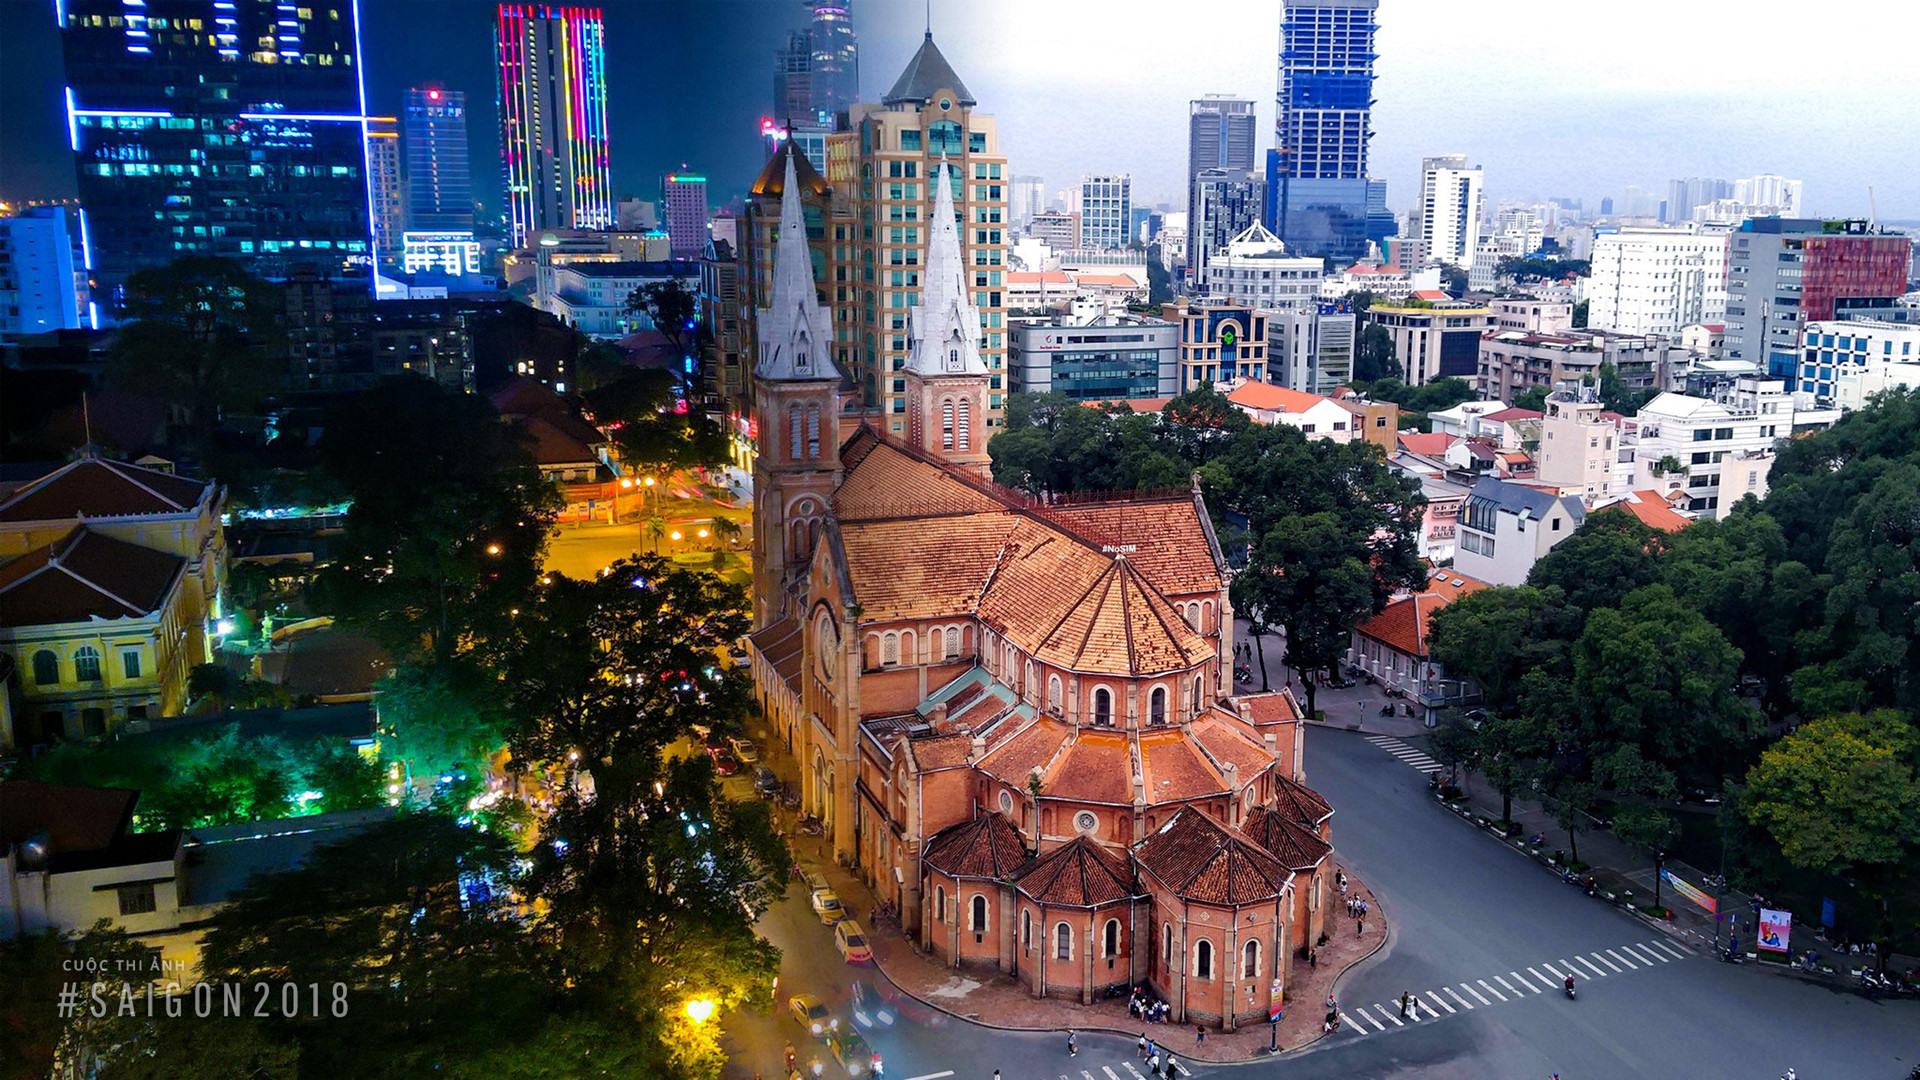 Hình ảnh Sài Gòn 2018 đẹp bền